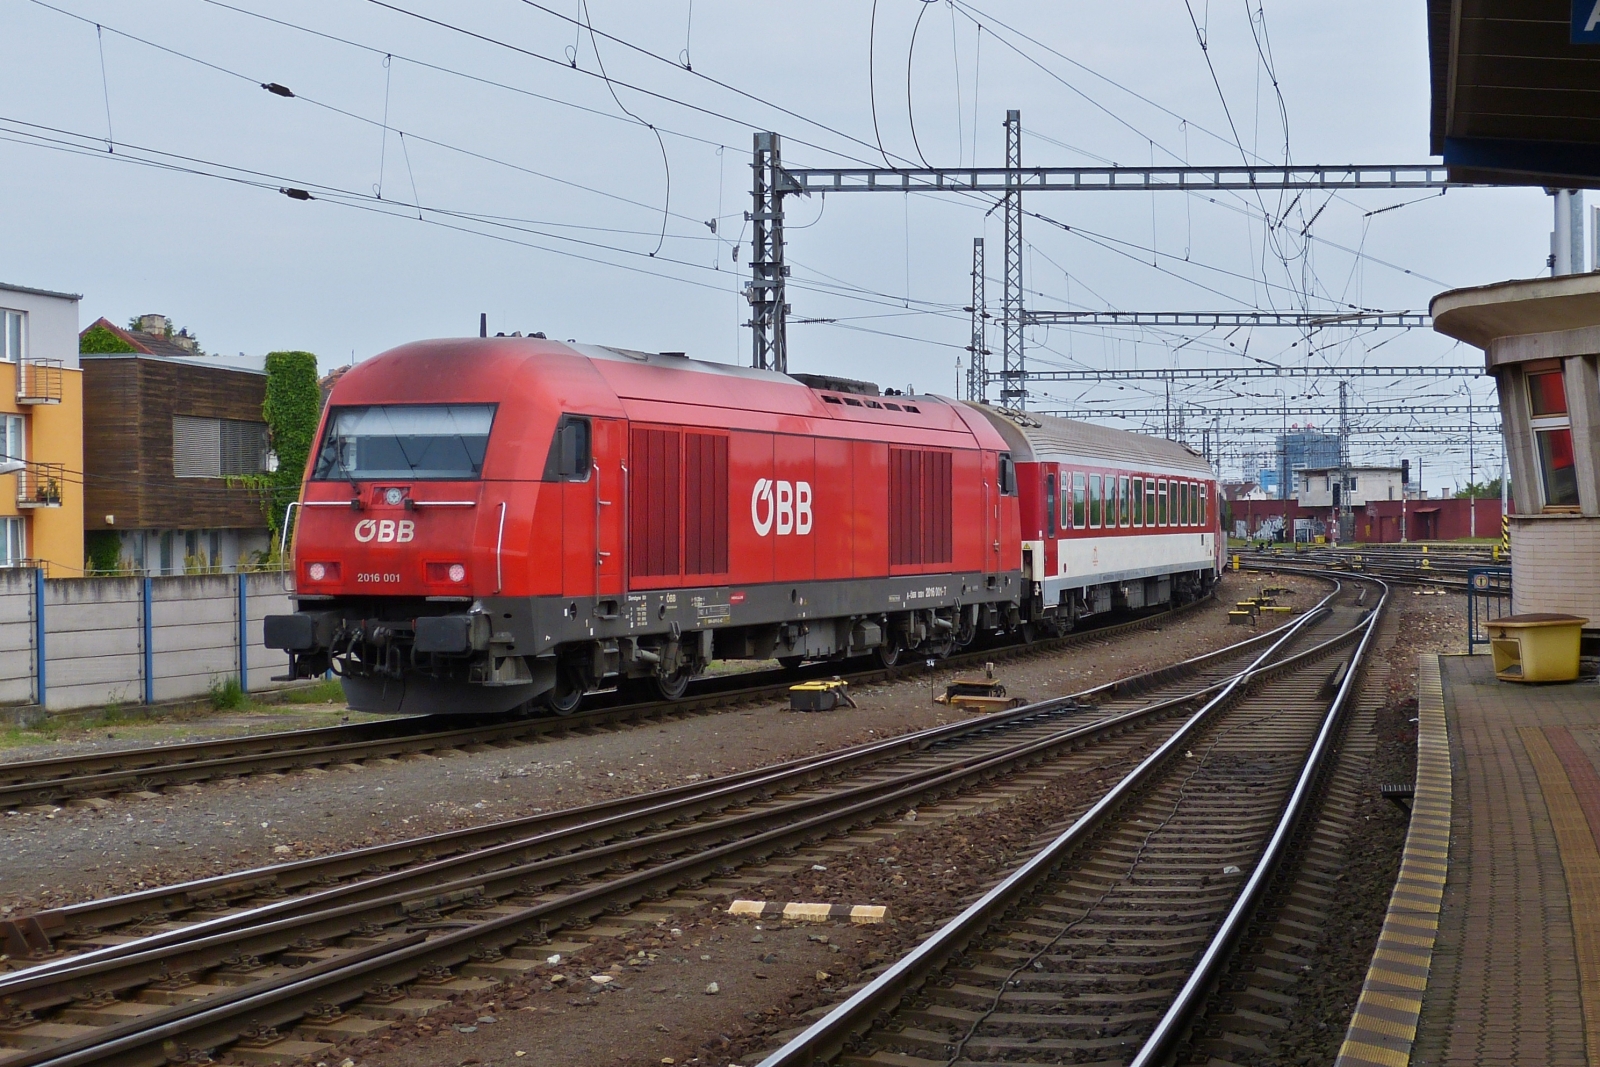 BB 2016 001 schiebt ihrem Zug aus dem Bahnhof von Bratislava in Richtung Abstellung. 05.06.2023 